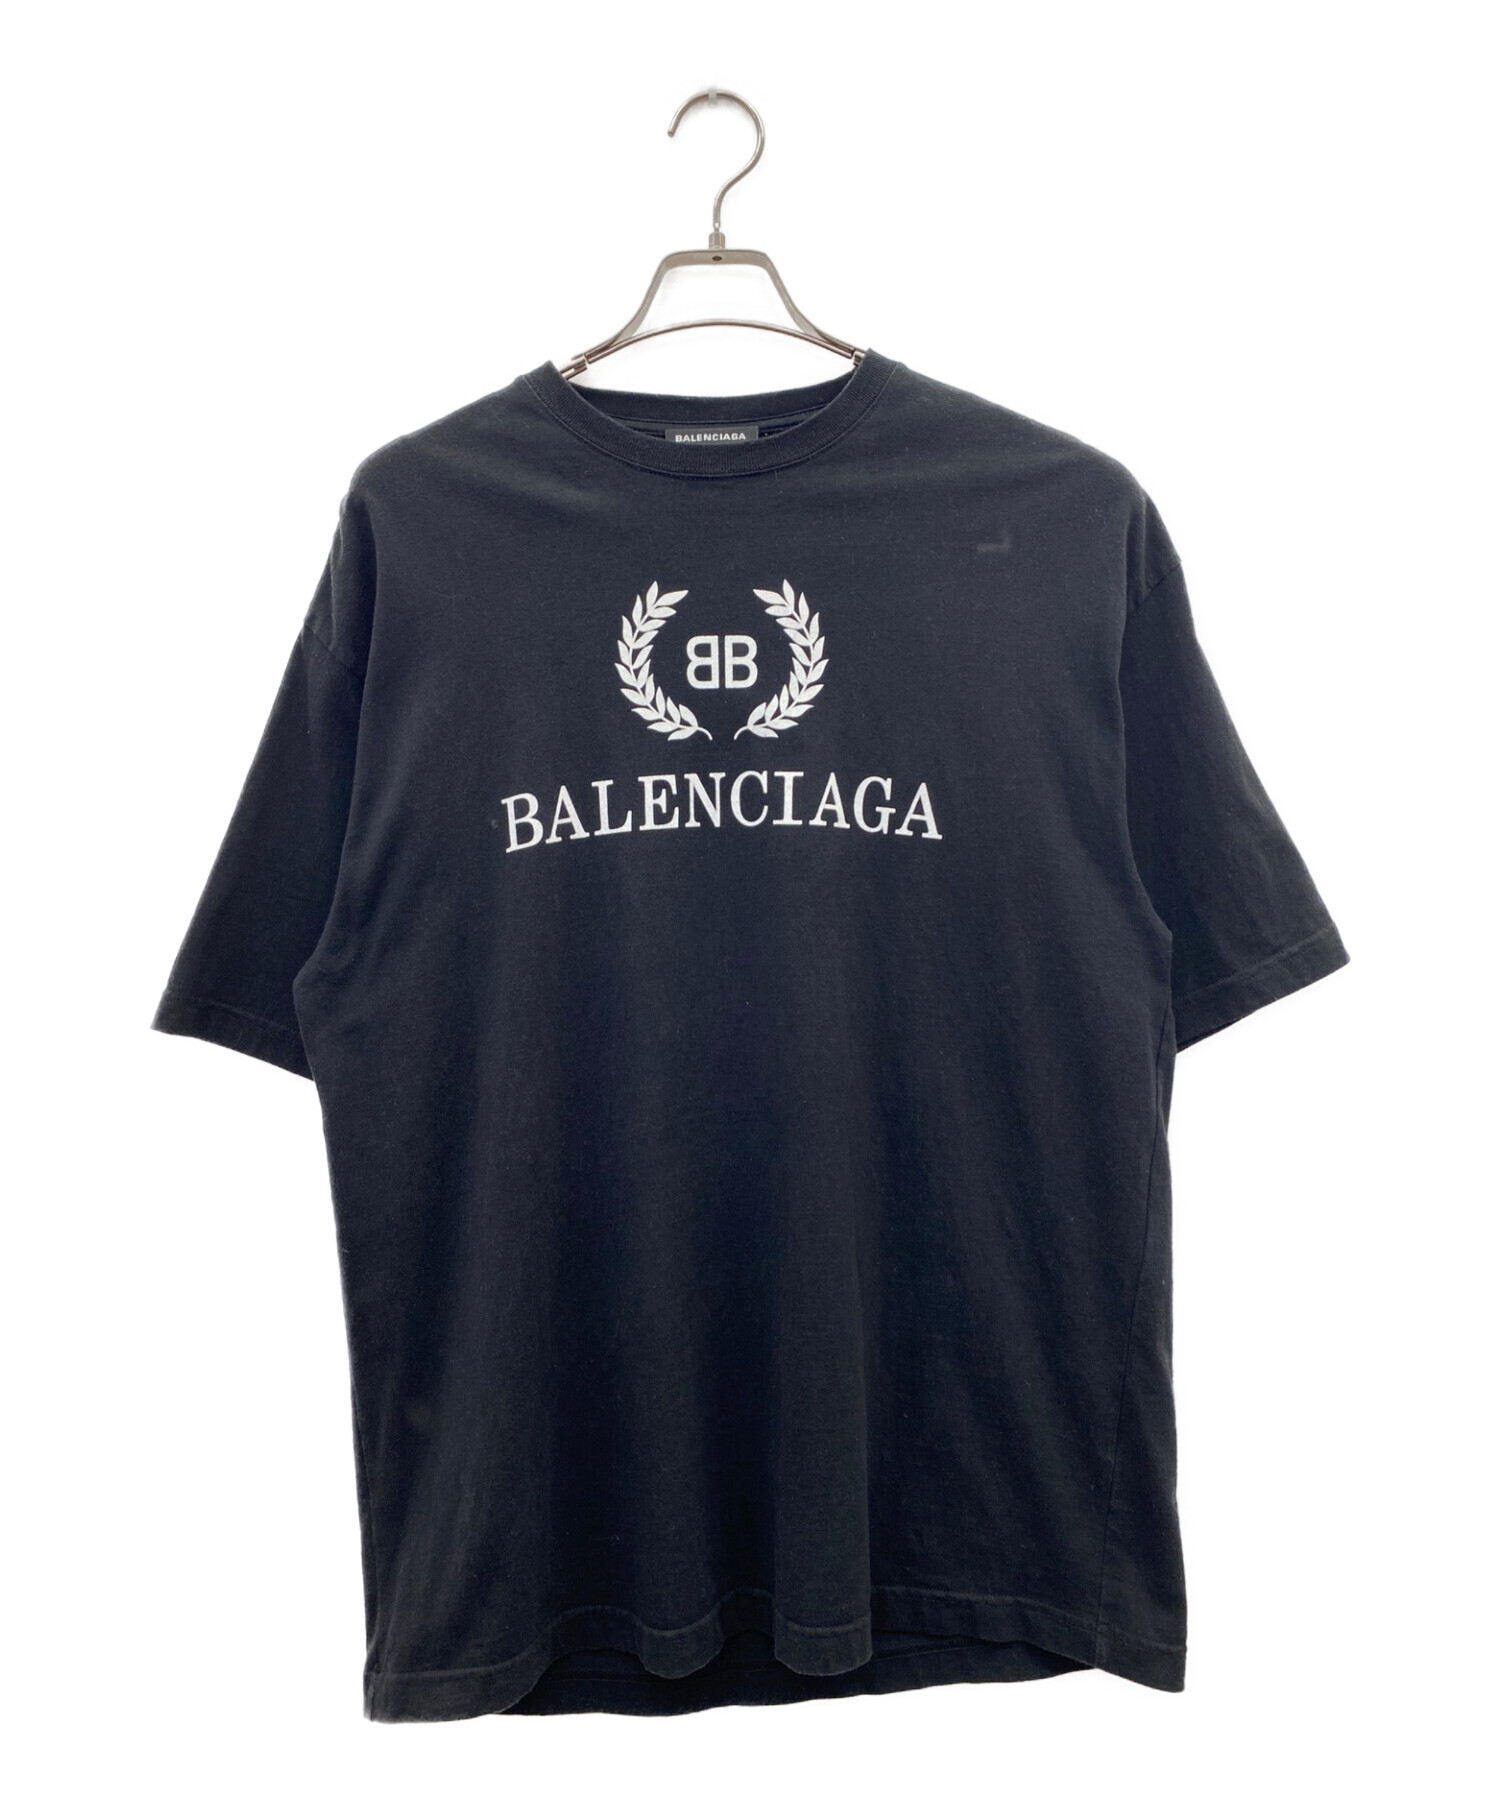 バレンシアガ BALENCIAGA BB ロゴ Tシャツ カットソー 半袖 黒